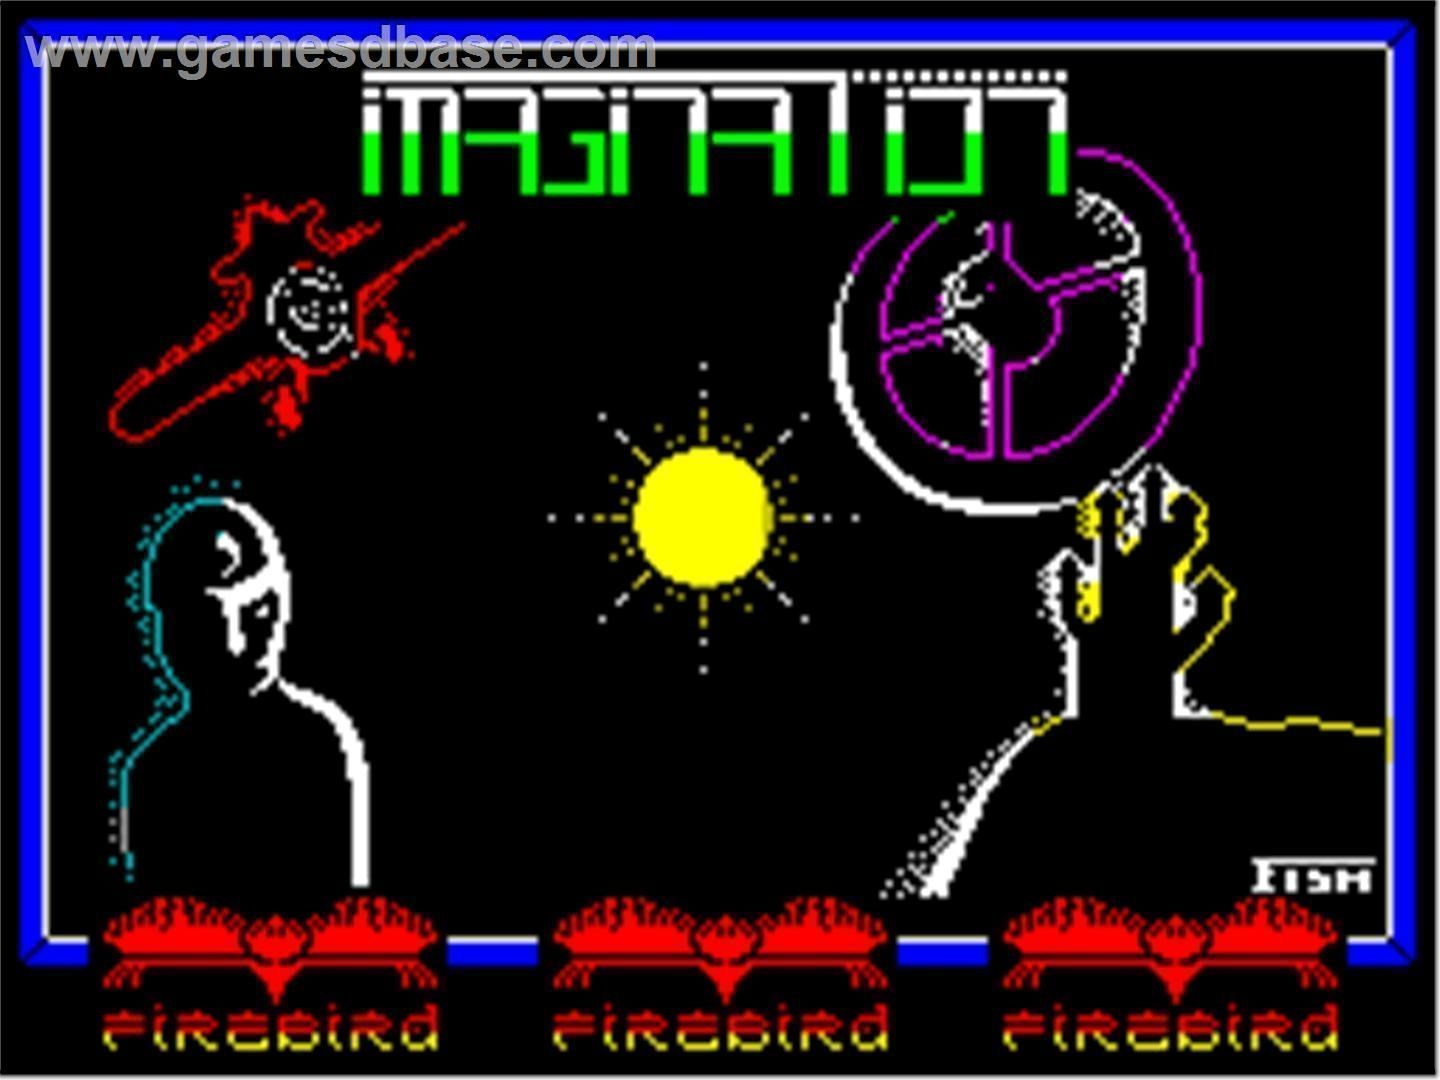 Imagination (1987)(Firebird Software)